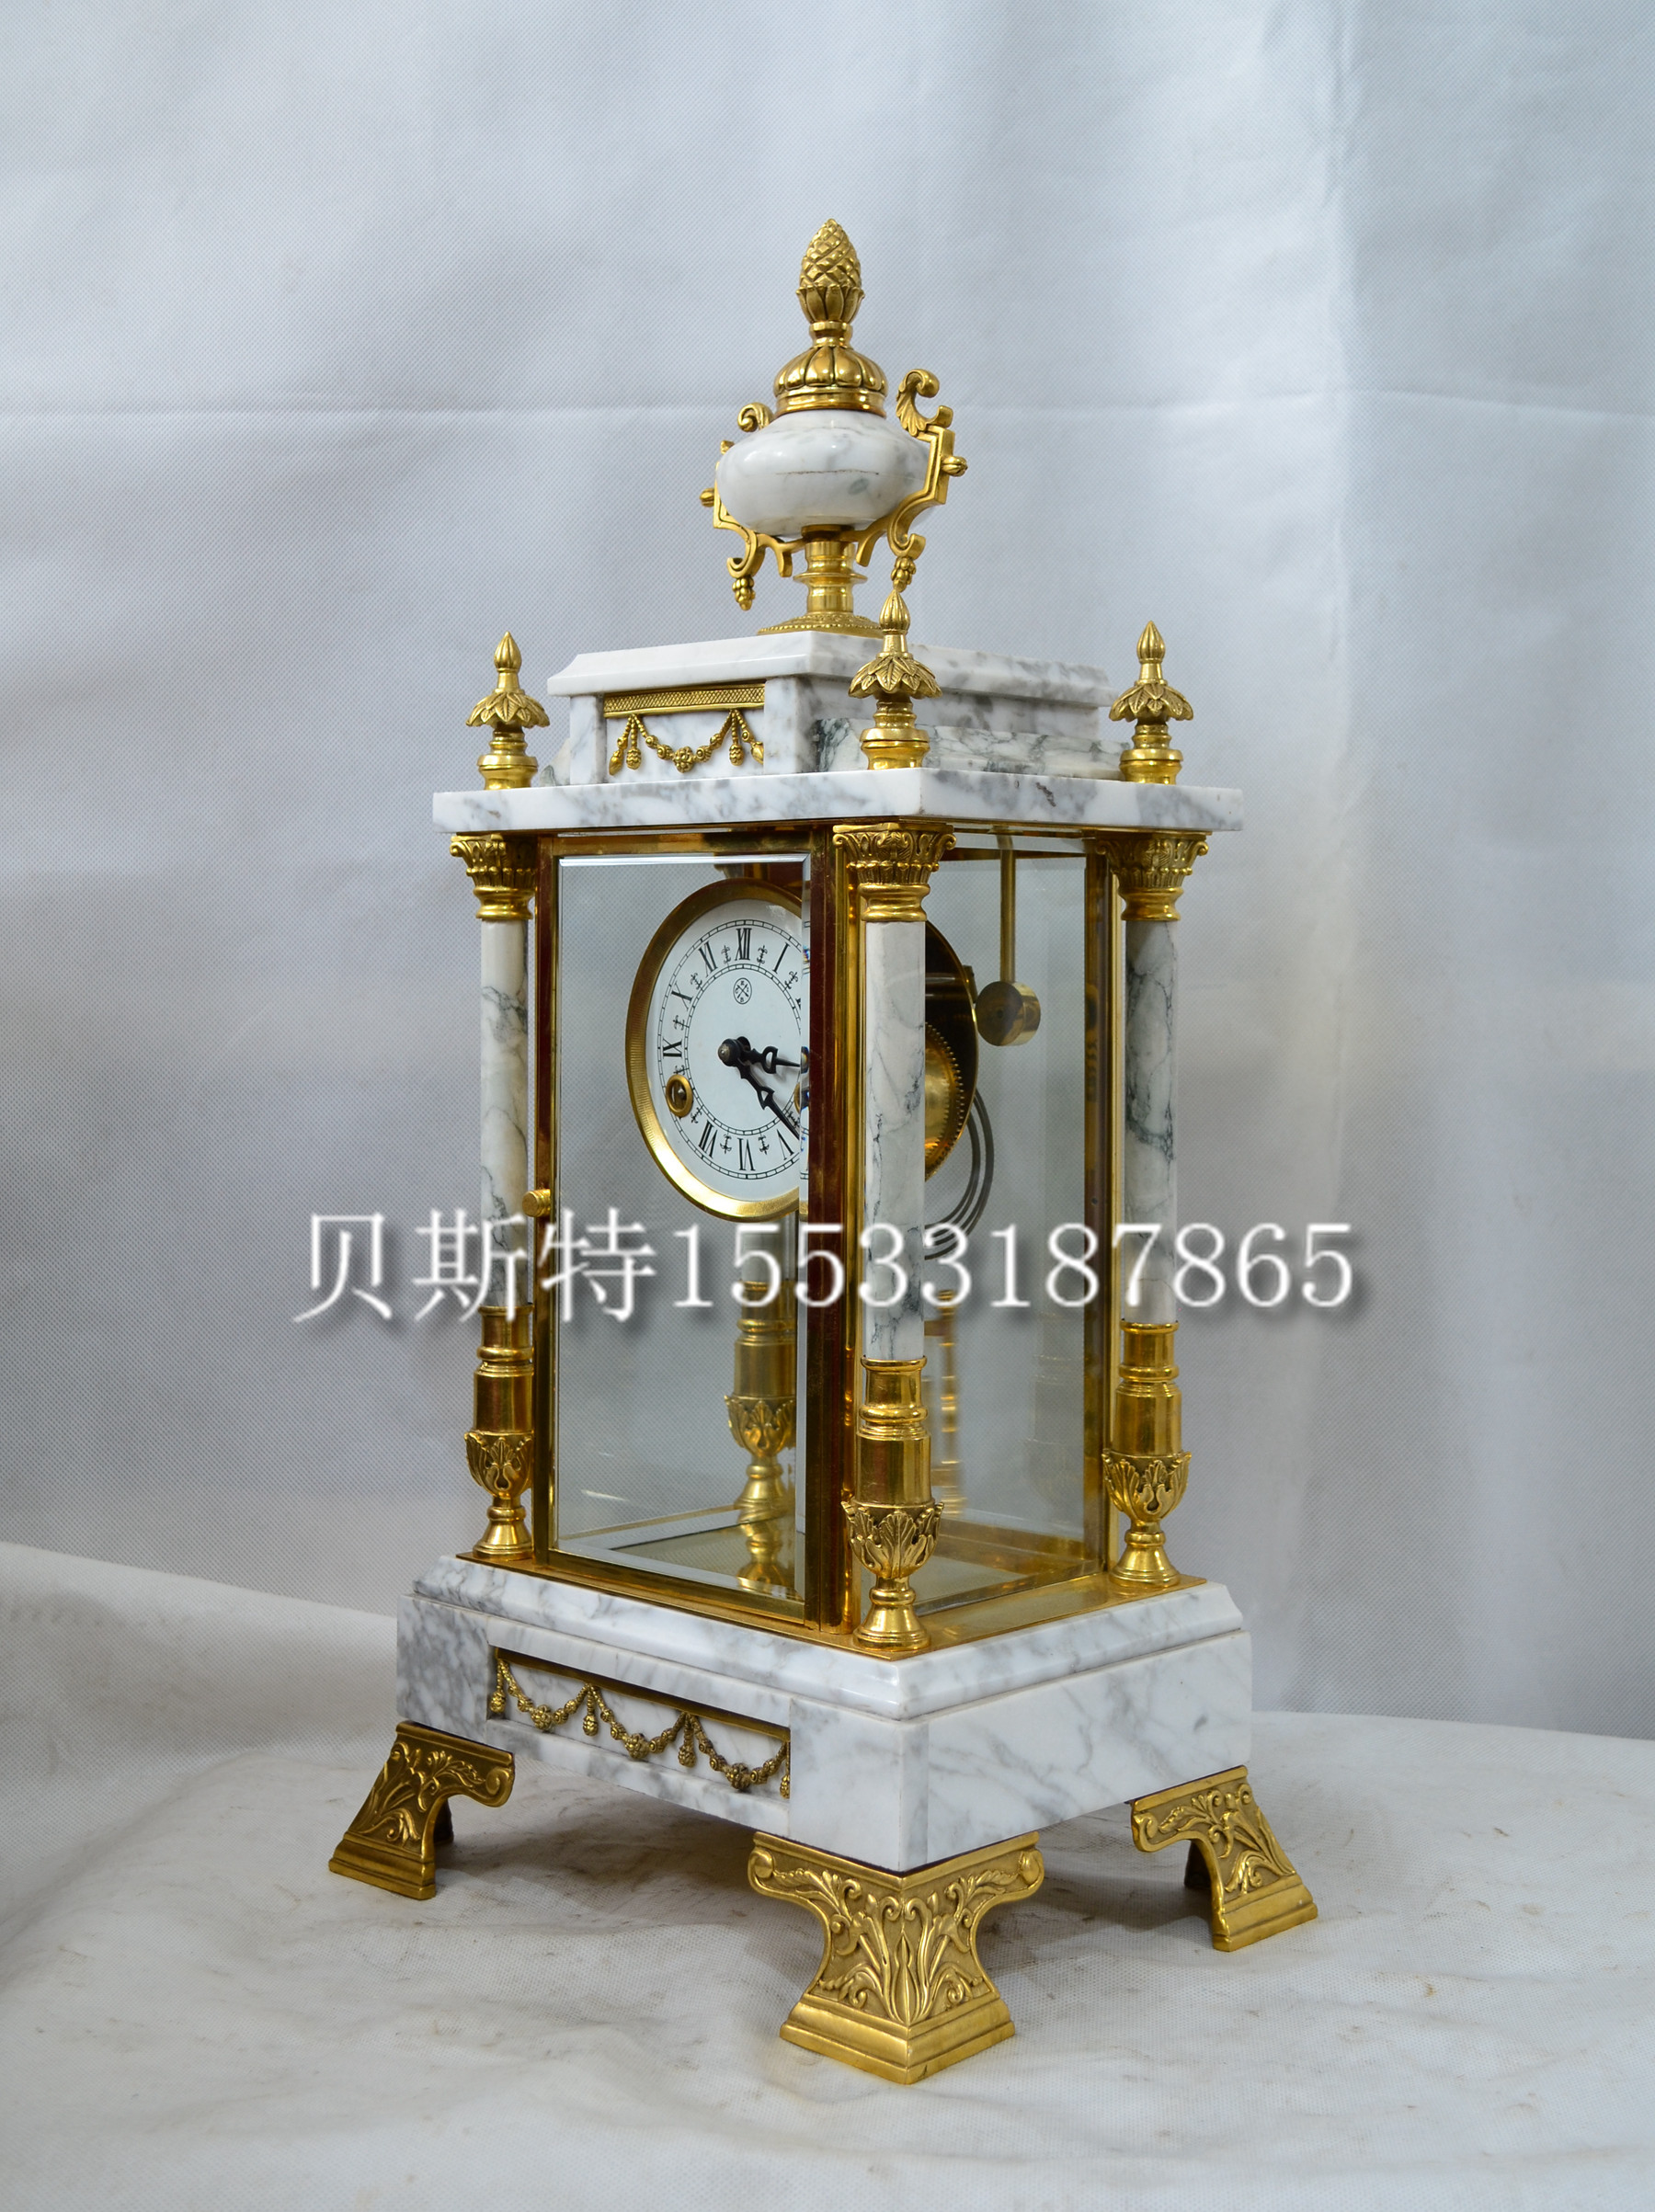 钟表机械天然大理石座钟欧式家居壁炉条案自鸣钟创意家居贝斯特钟-封面